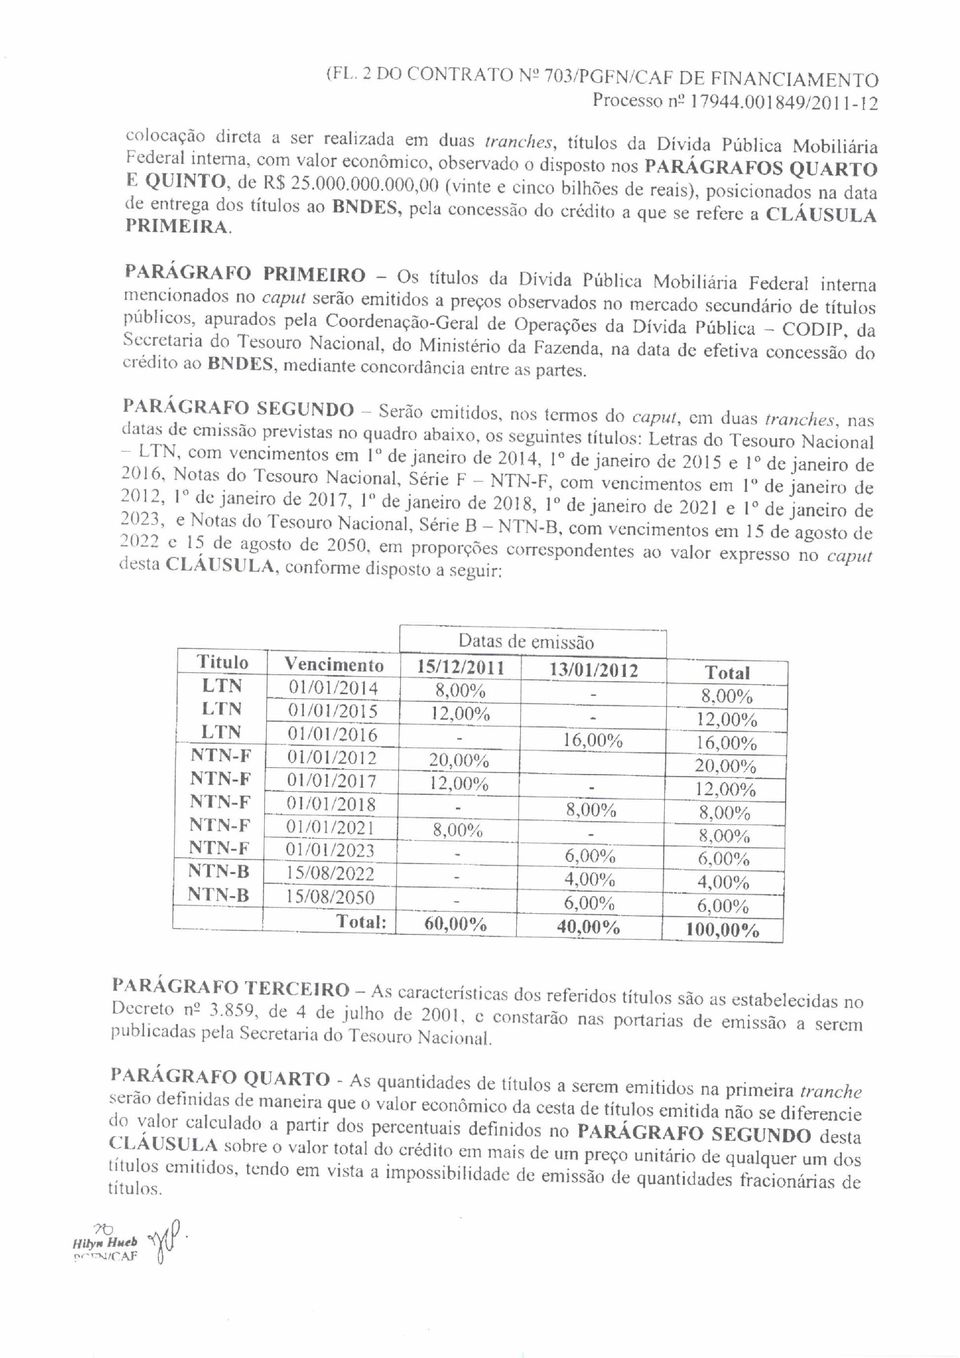 25.000.000.000,00 (vinte e cinco bilhões de reais), posicionados na data de entrega dos títulos ao BNDES, pela concessão do crédito a que se refere a CLÁUSULA PRIMEIRA.